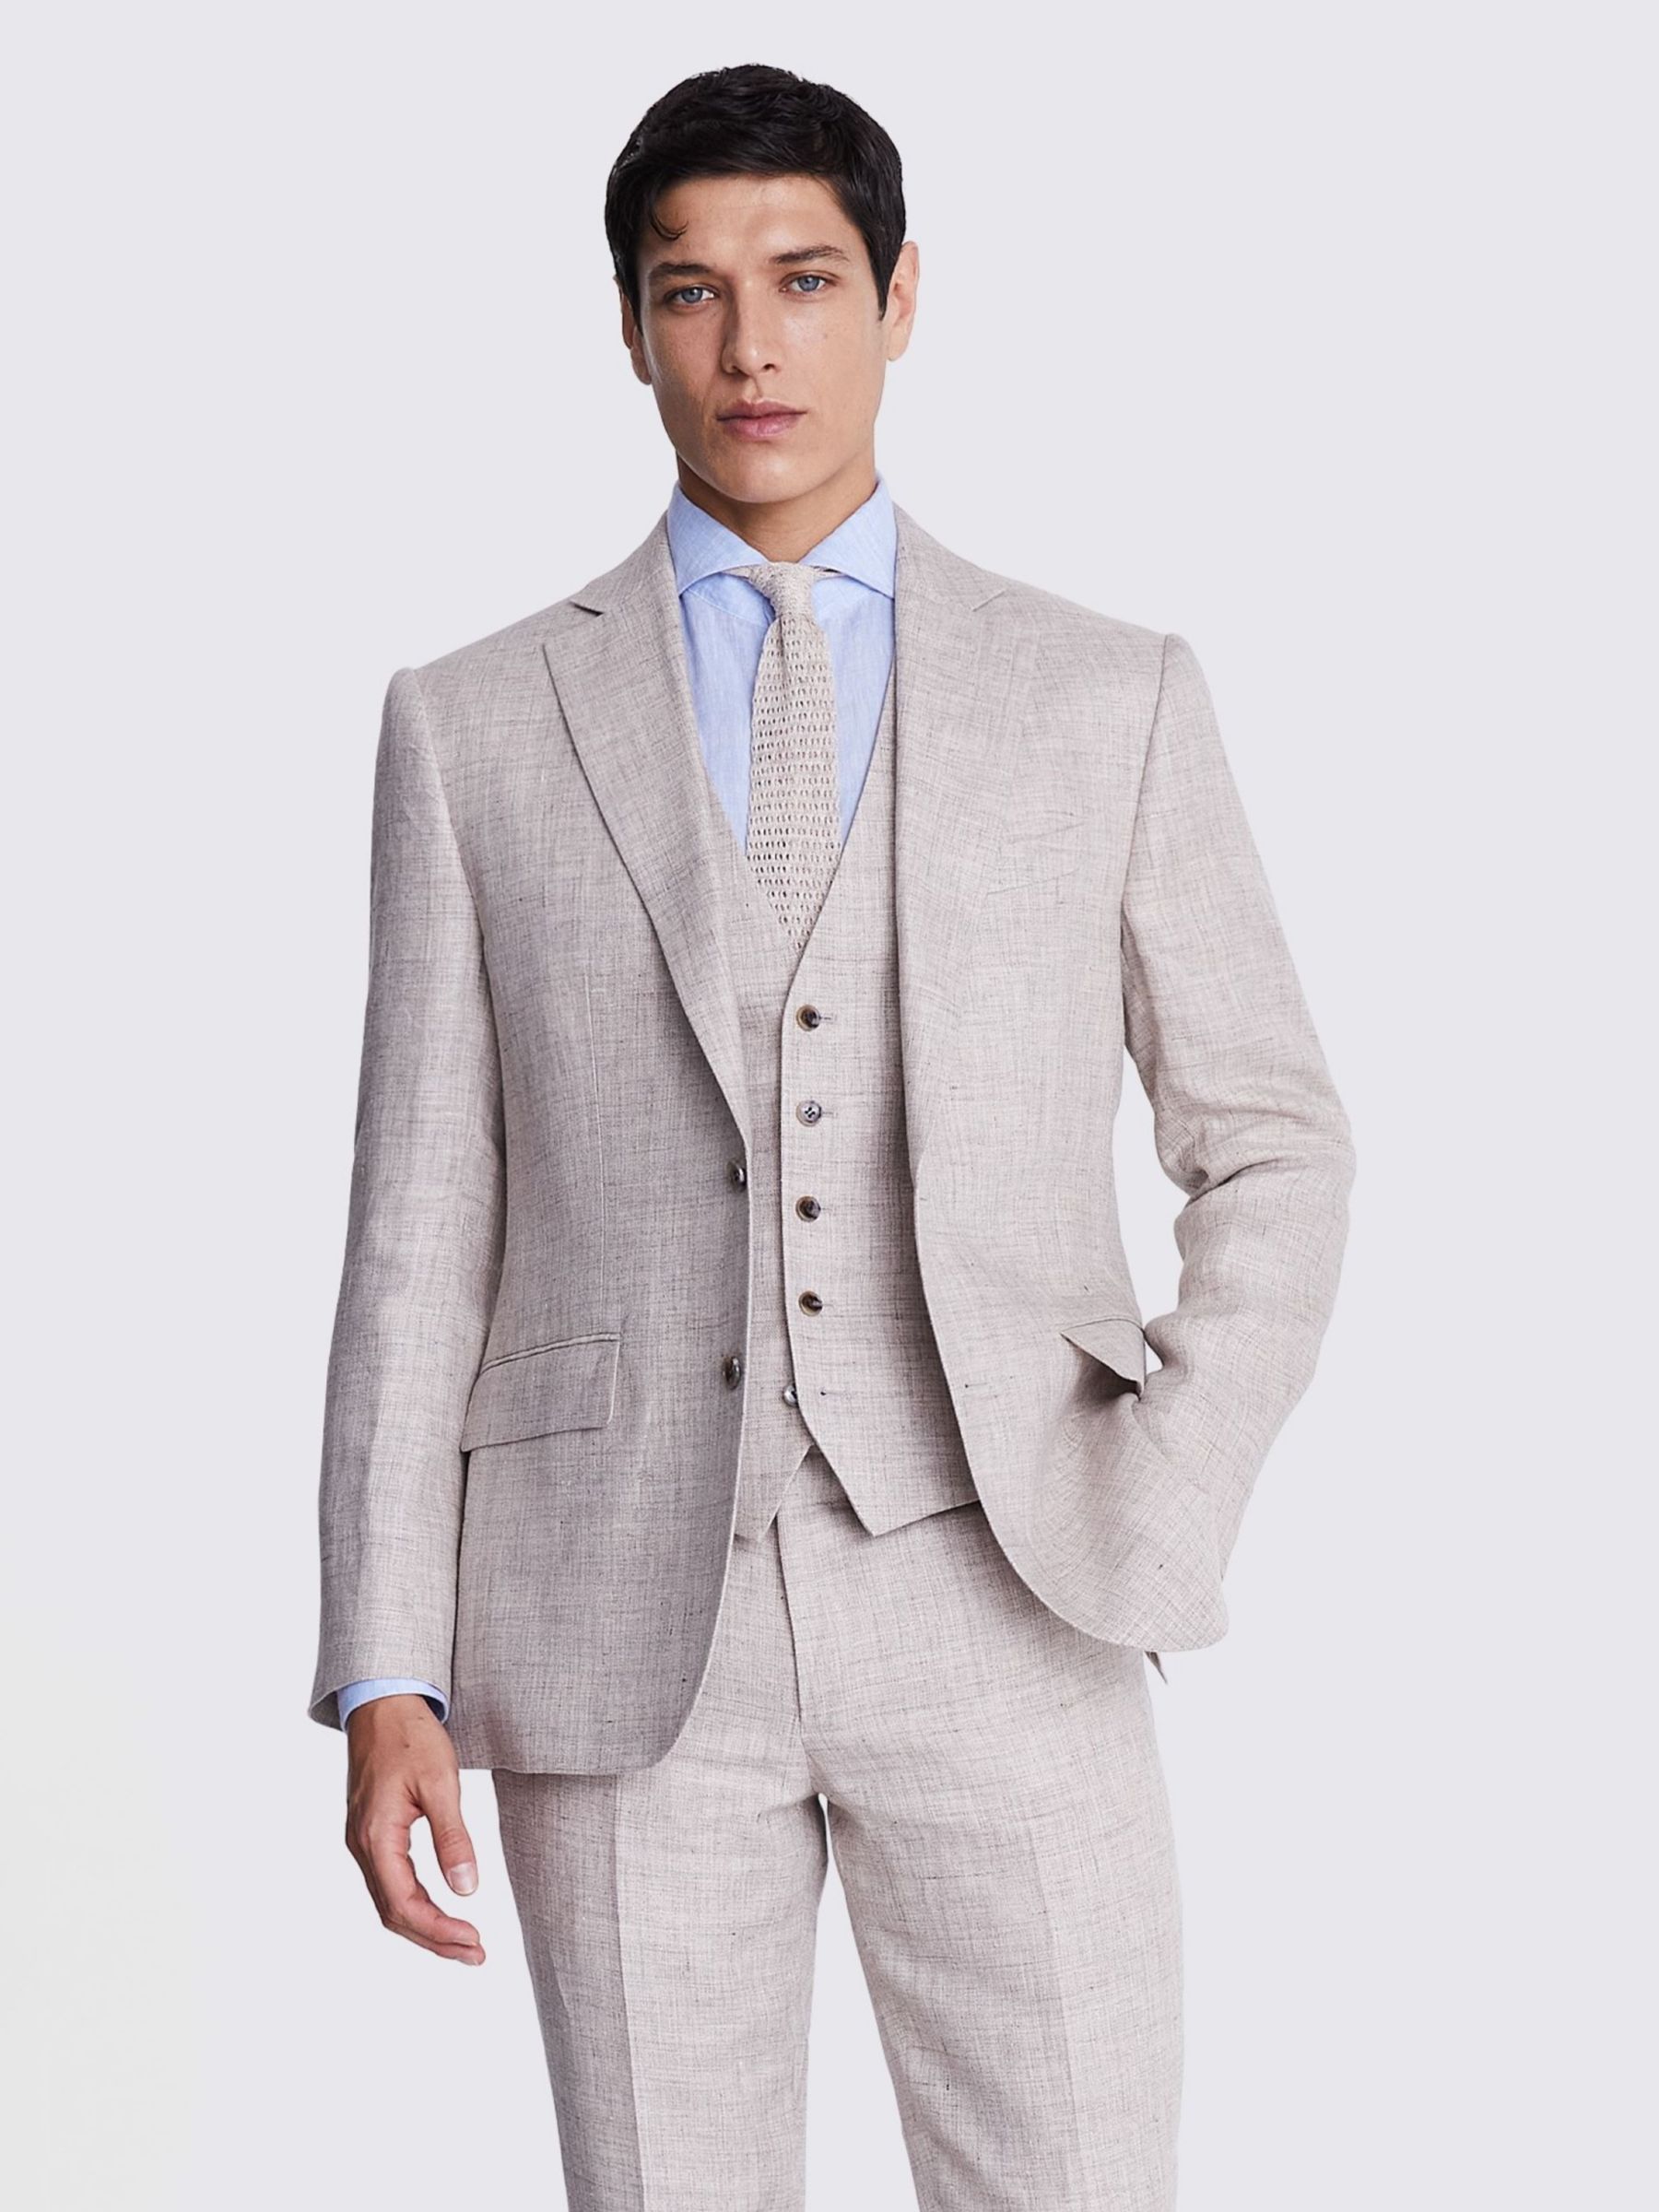 Men's Linen Suits  Shop Online at Moss